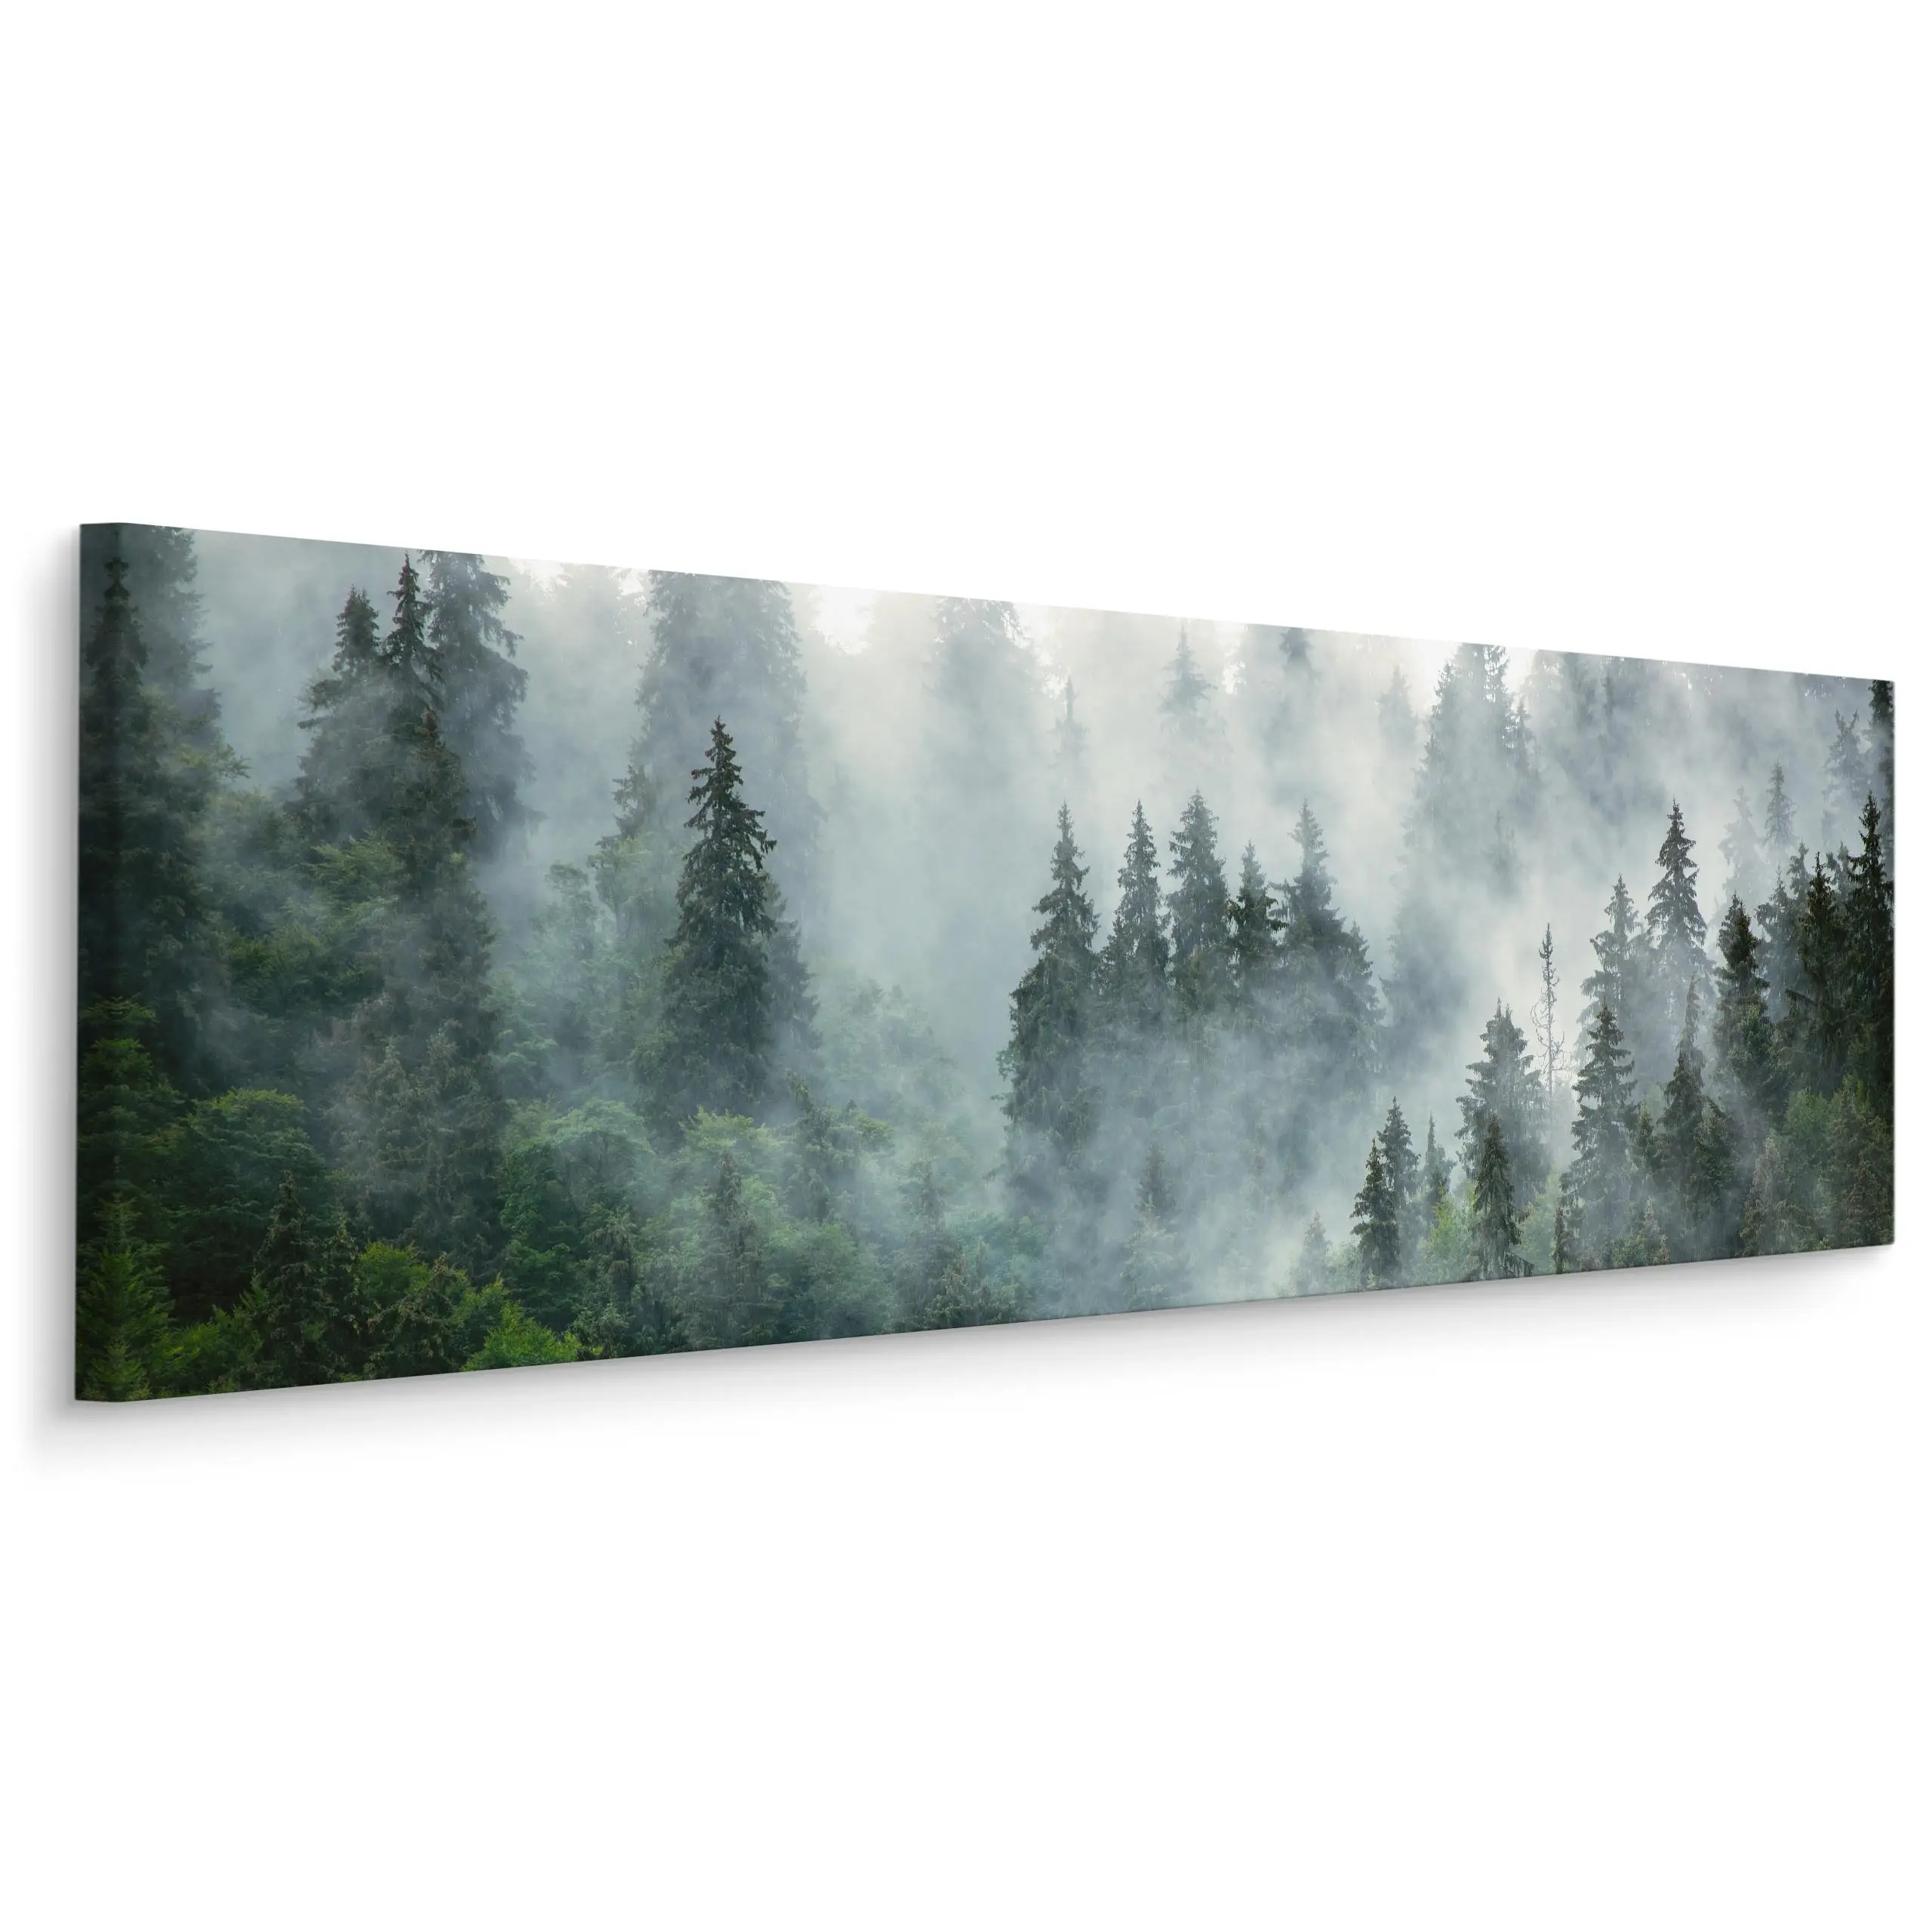 Panoramabild Nebliger Wald Landschaft 3D